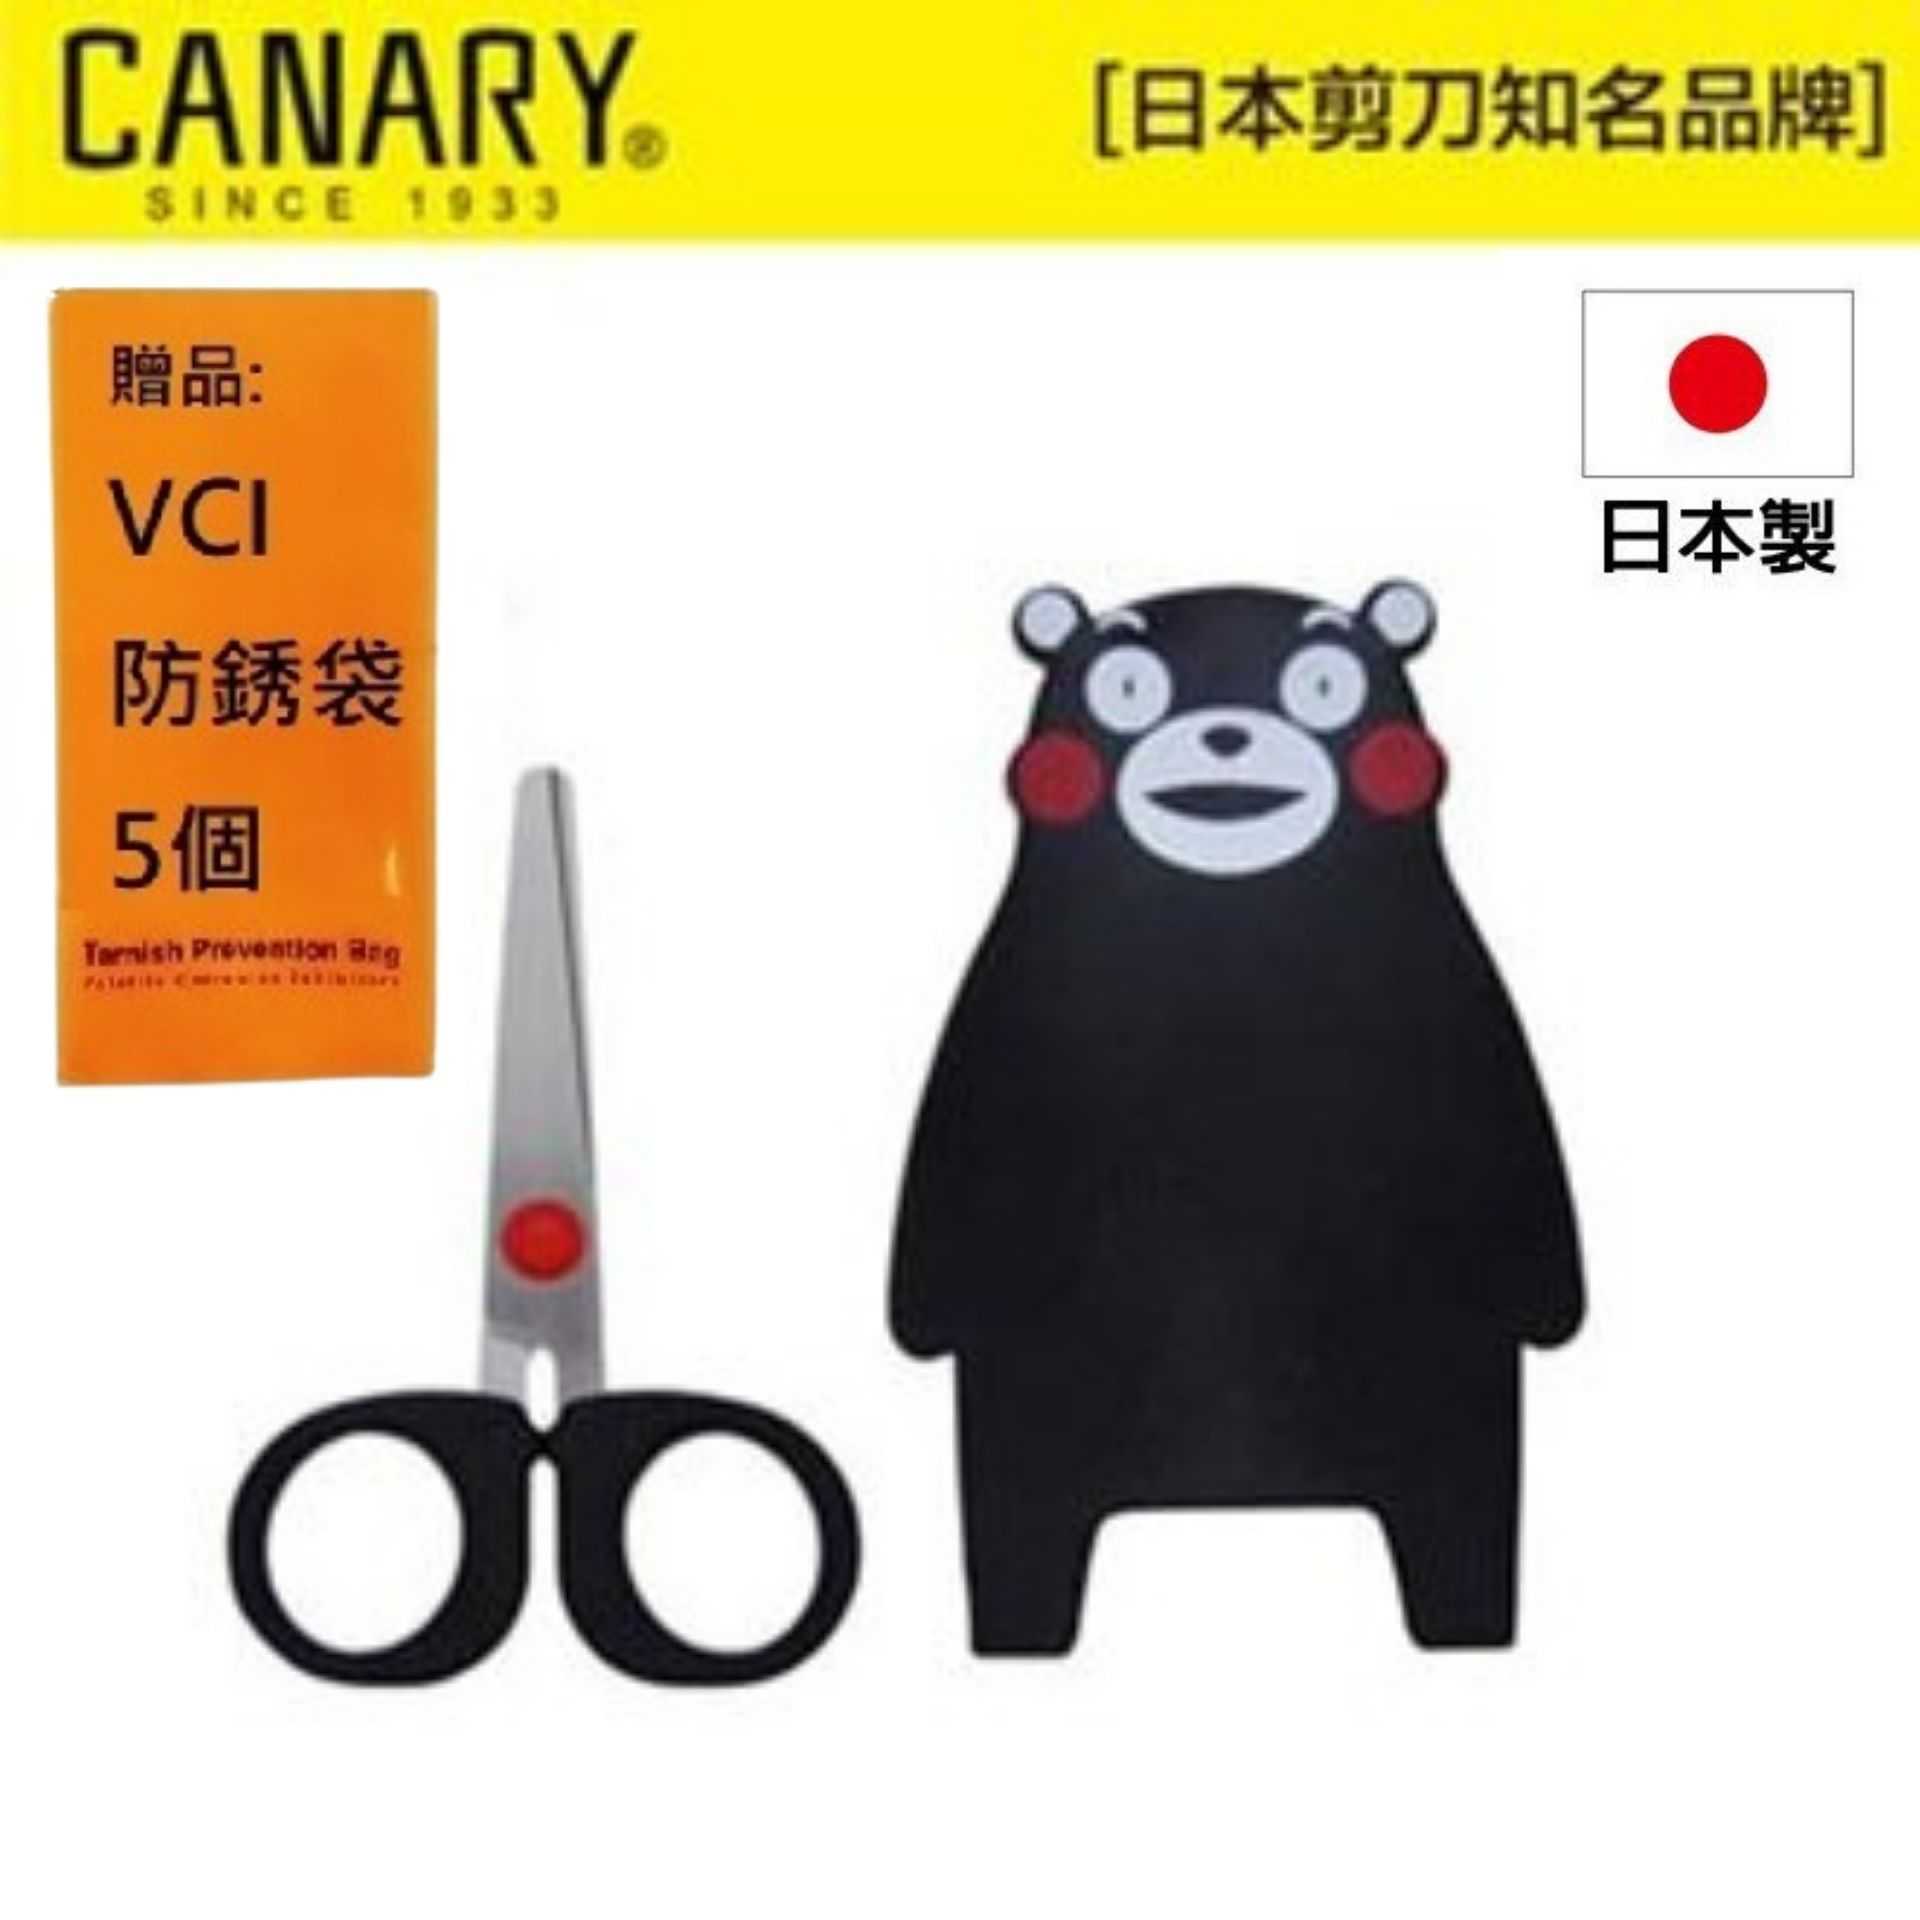 【日本CANARY】熊本熊小剪刀-療癒系小物 人氣明星熊本熊剪刀!